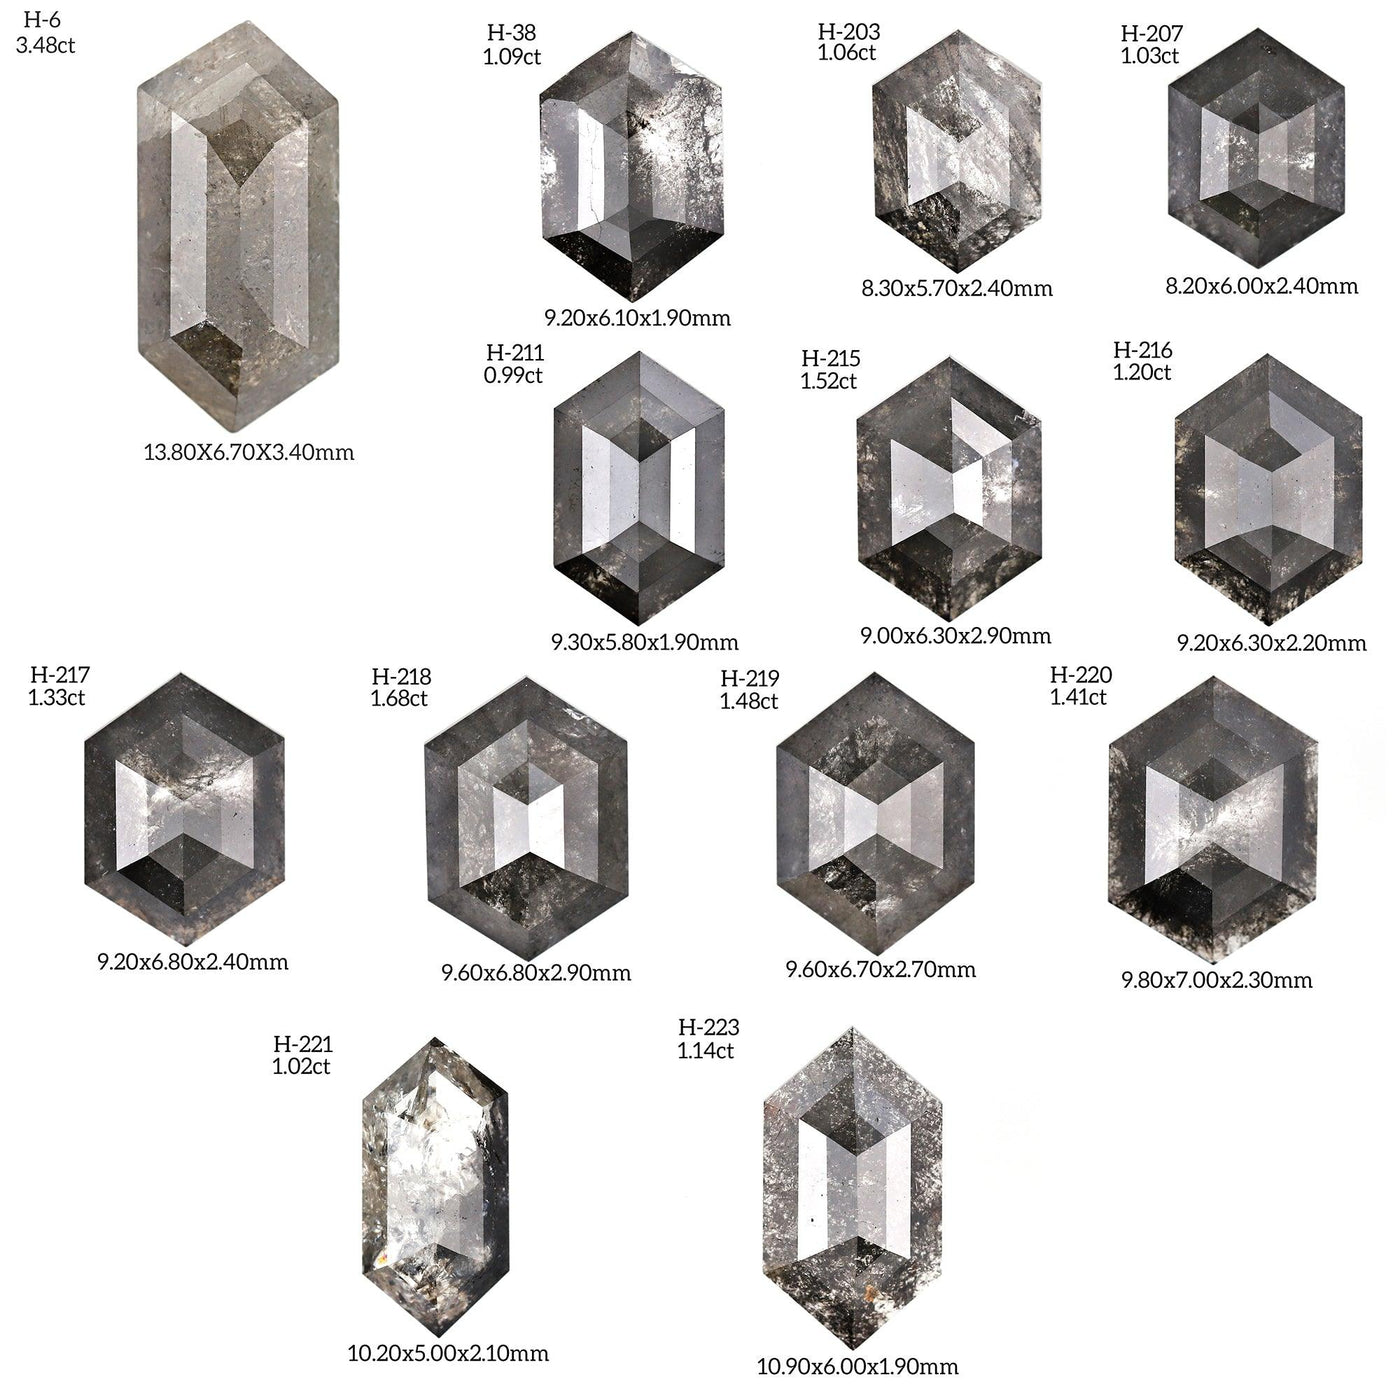 H115 - Salt and pepper hexagon diamond